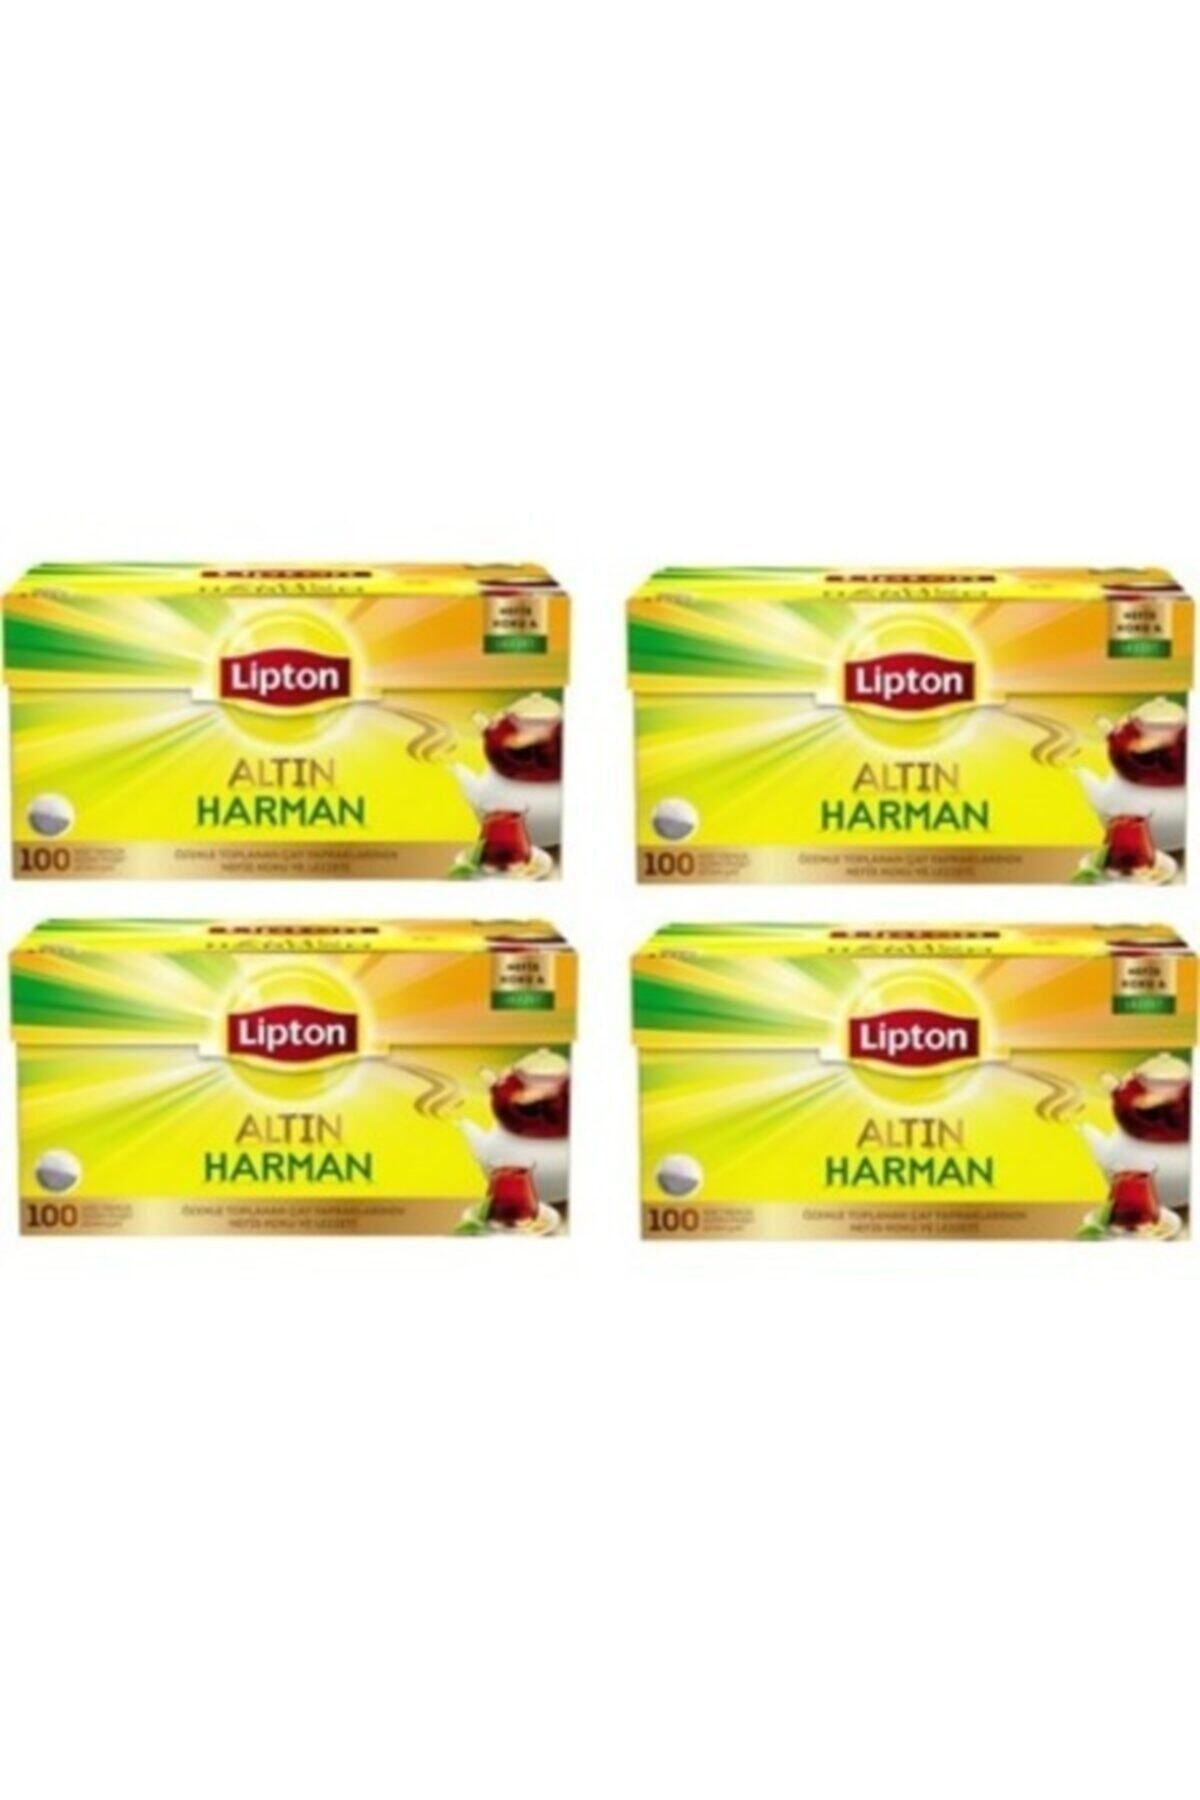 Lipton Altın Harman Demlik Poşet Çay 100'lü 4 Paket